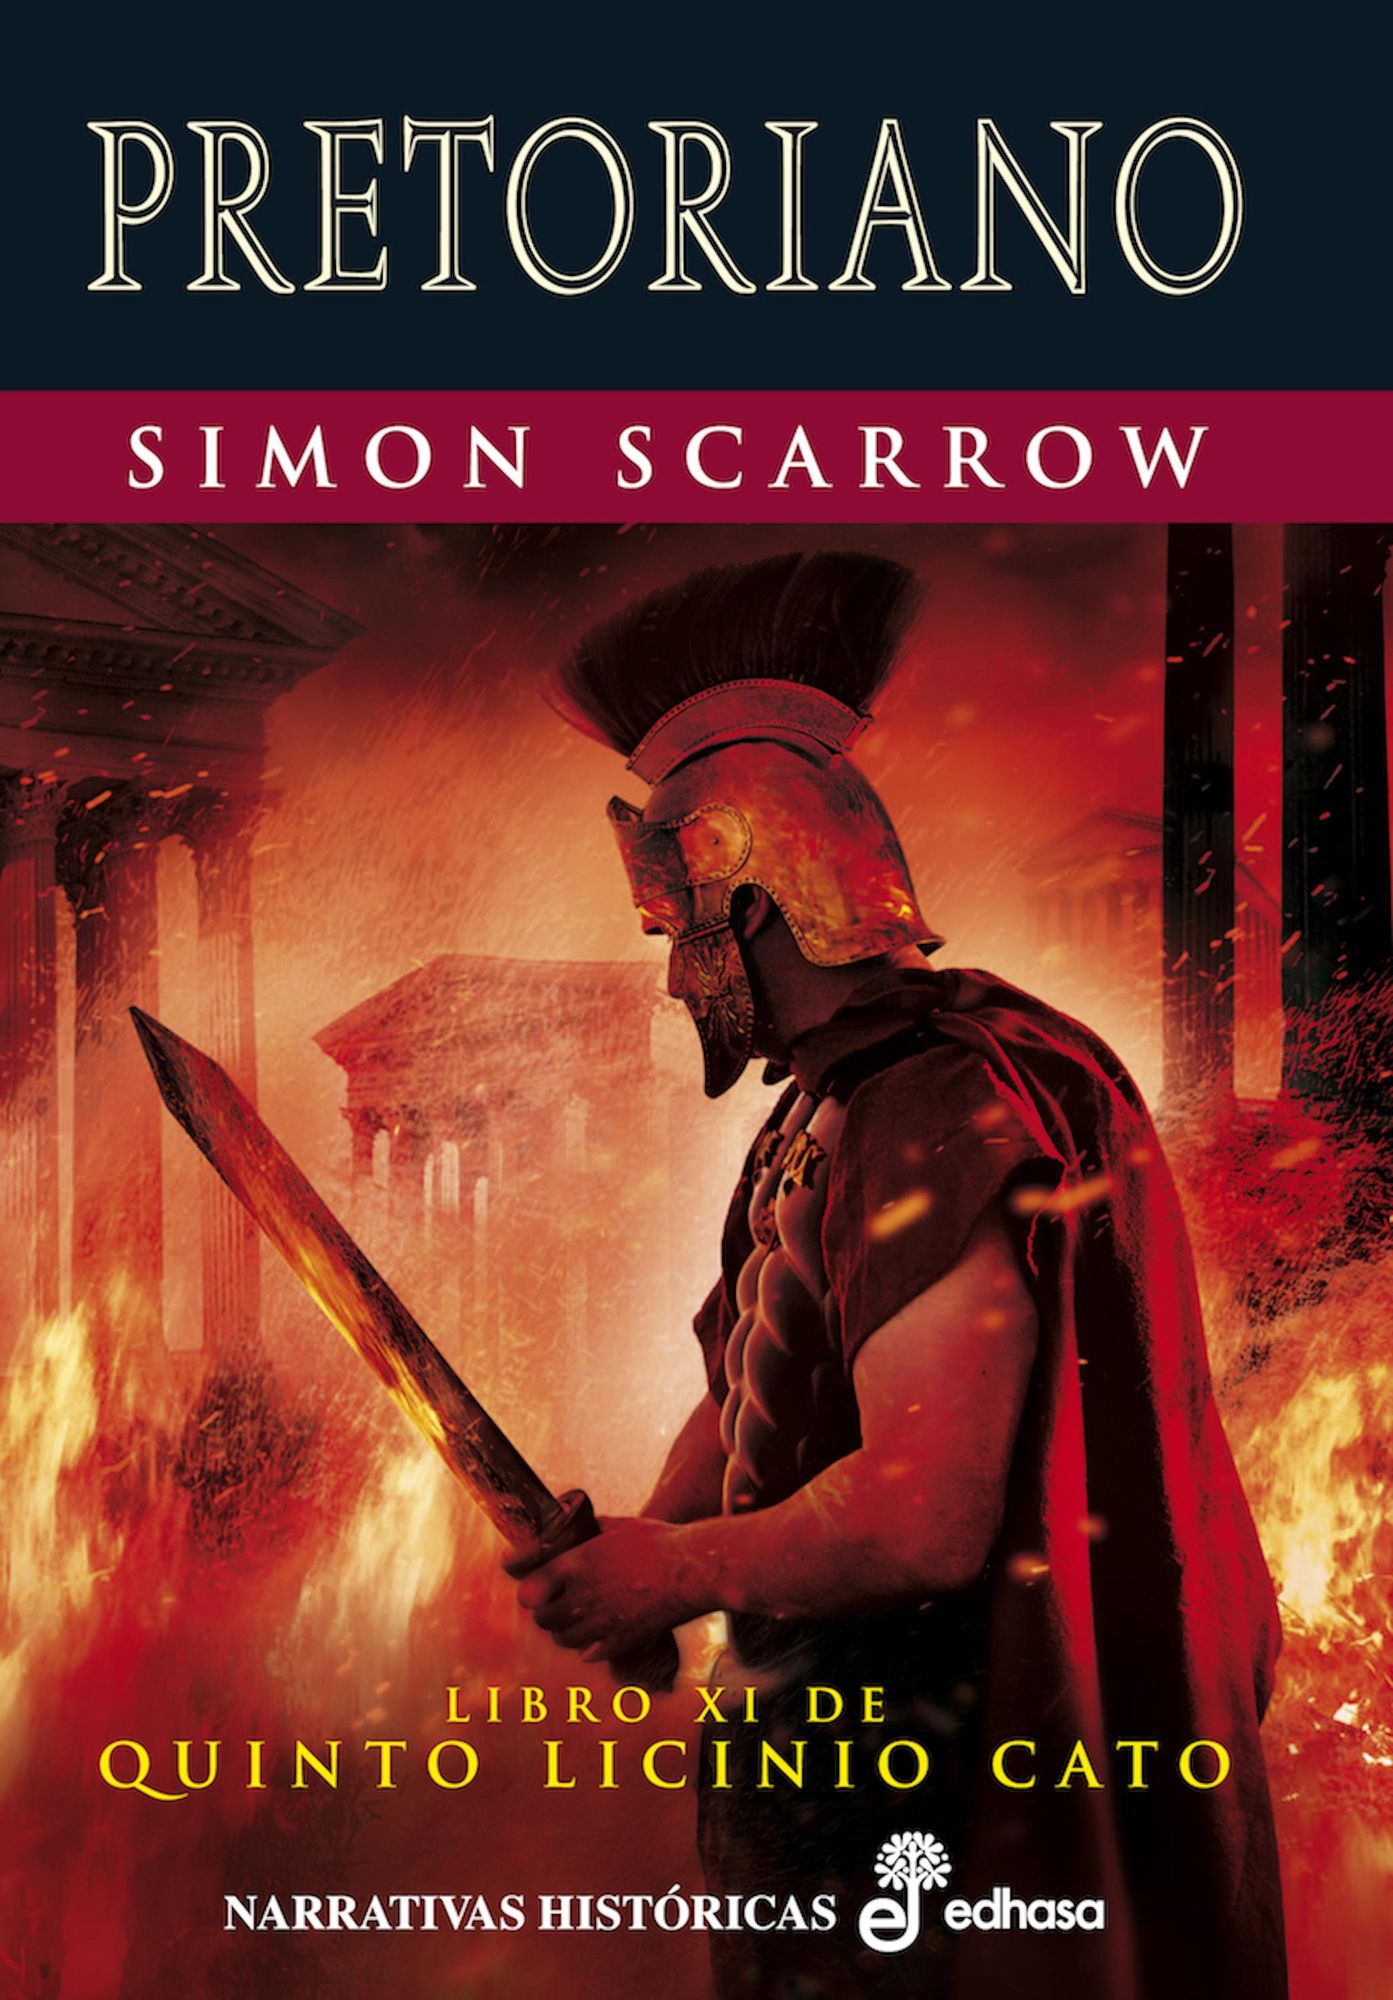 La profecía del águila' von 'Simon Scarrow' - eBook